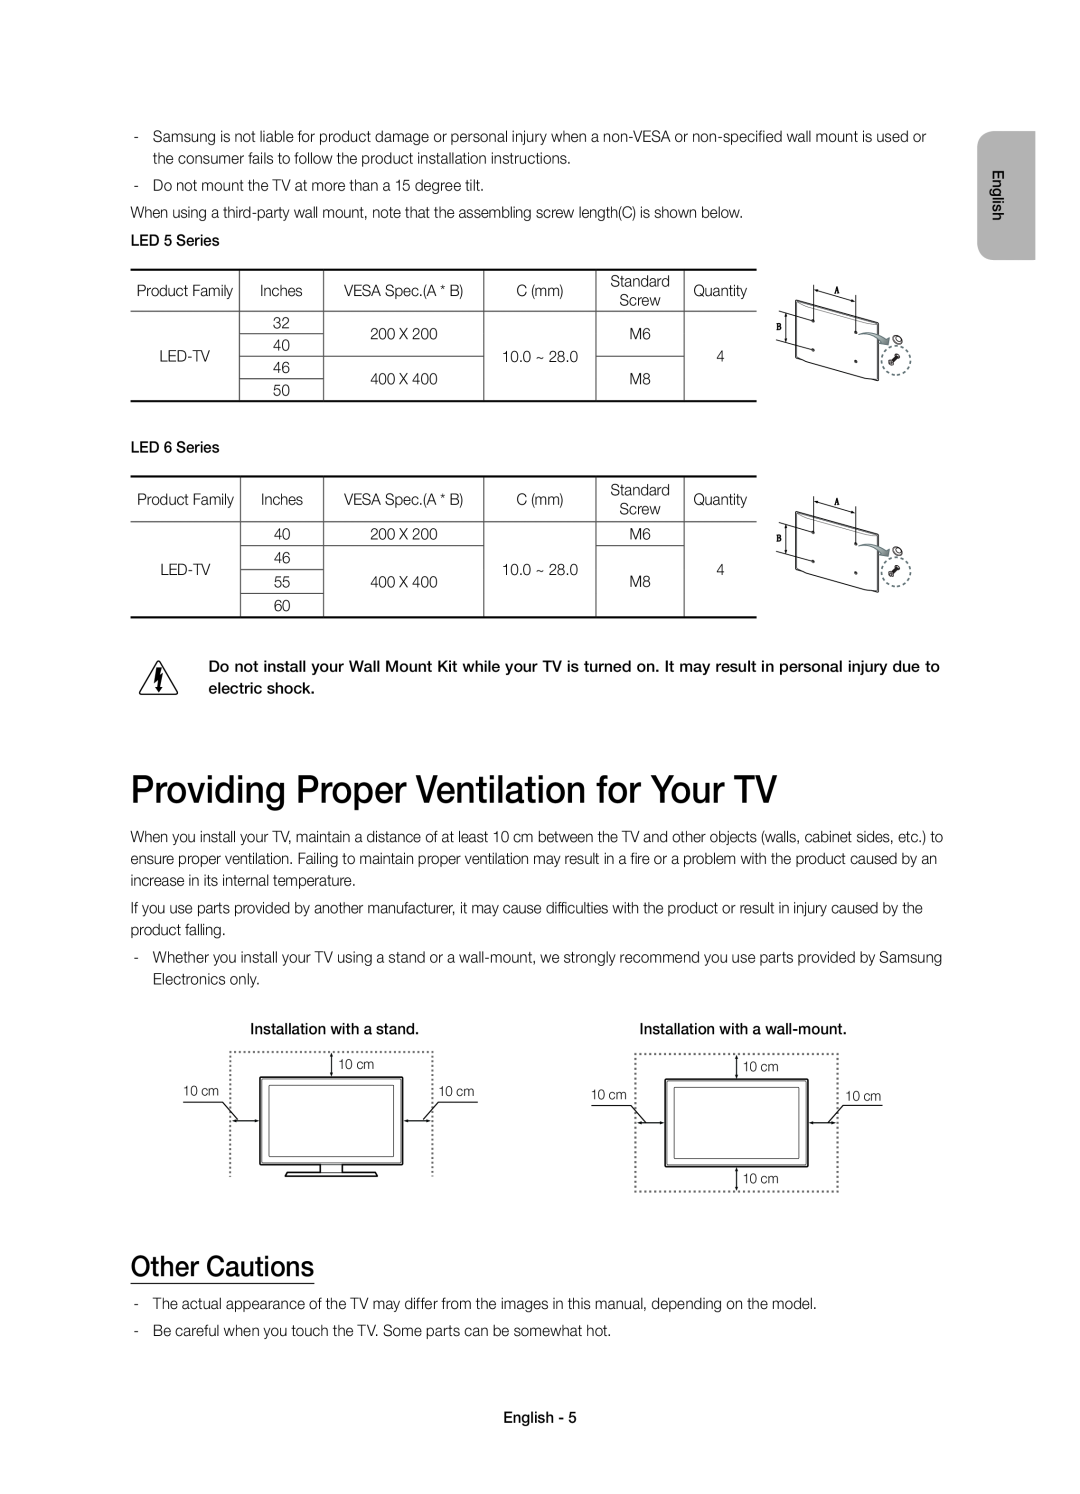 Samsung UE40H5303AWXZG, UE55H6273SSXZG, UE46H5373SSXZG manual Providing Proper Ventilation for Your TV, Other Cautions 